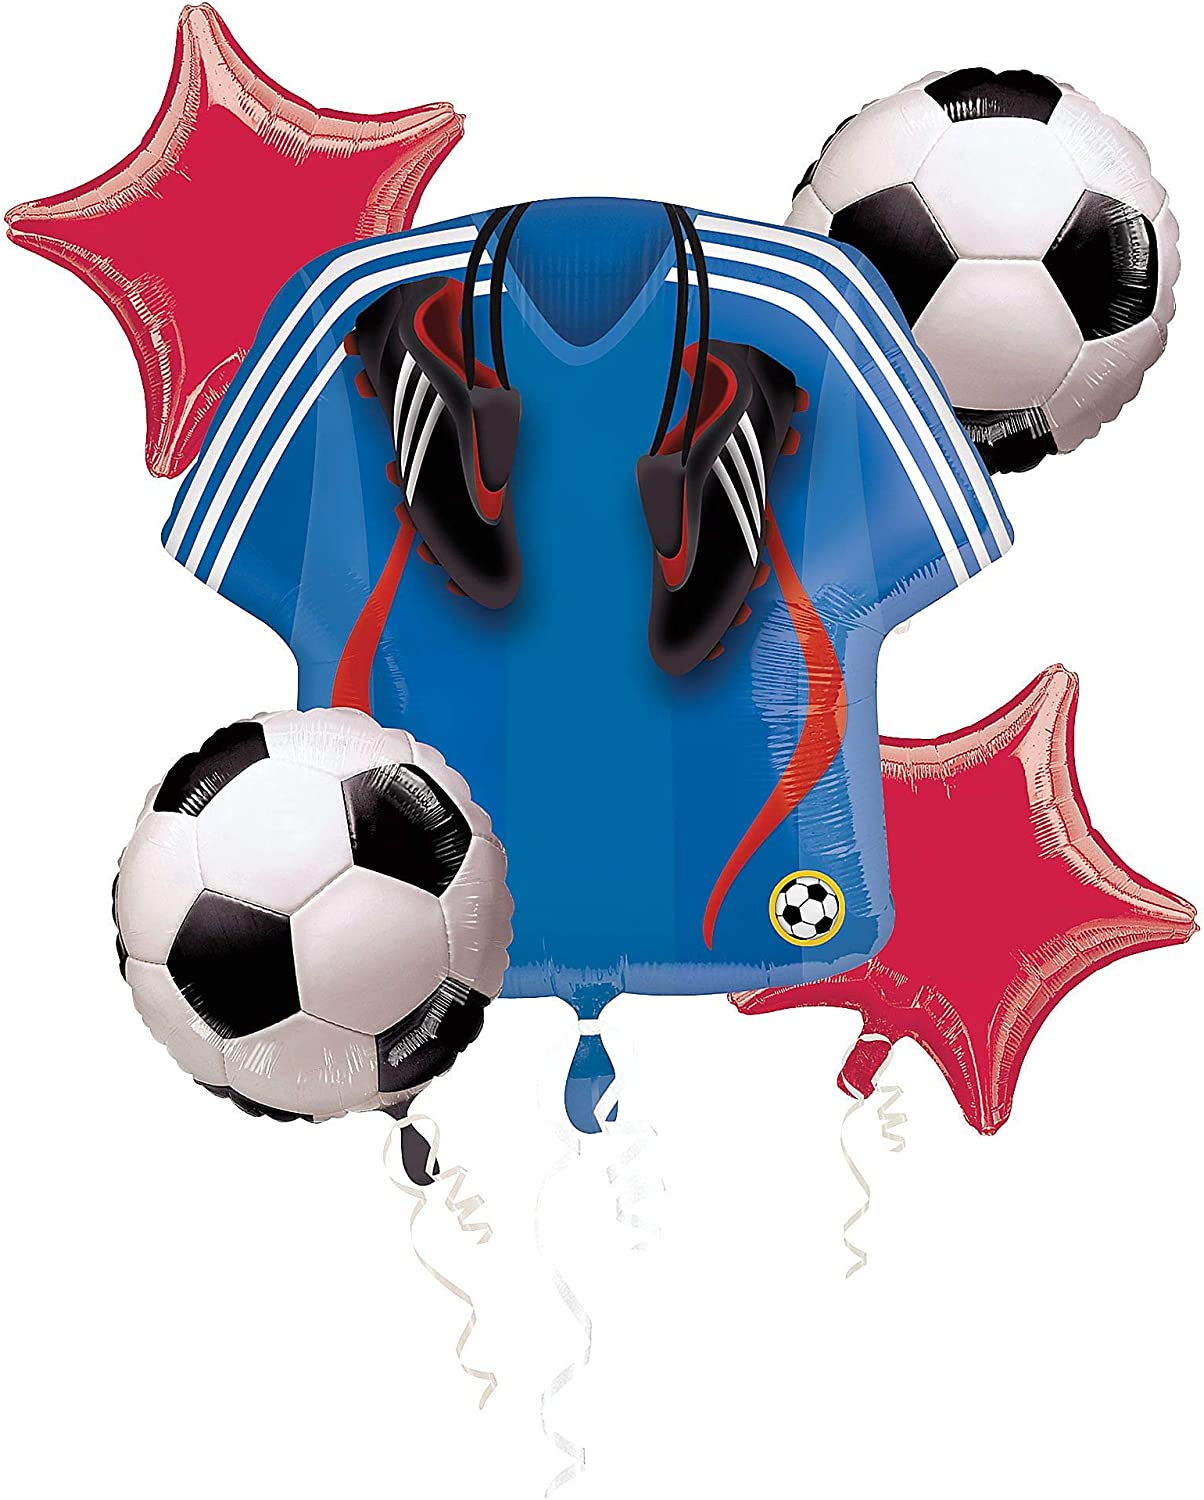 Soccer Player Foil Balloon Bouquet 